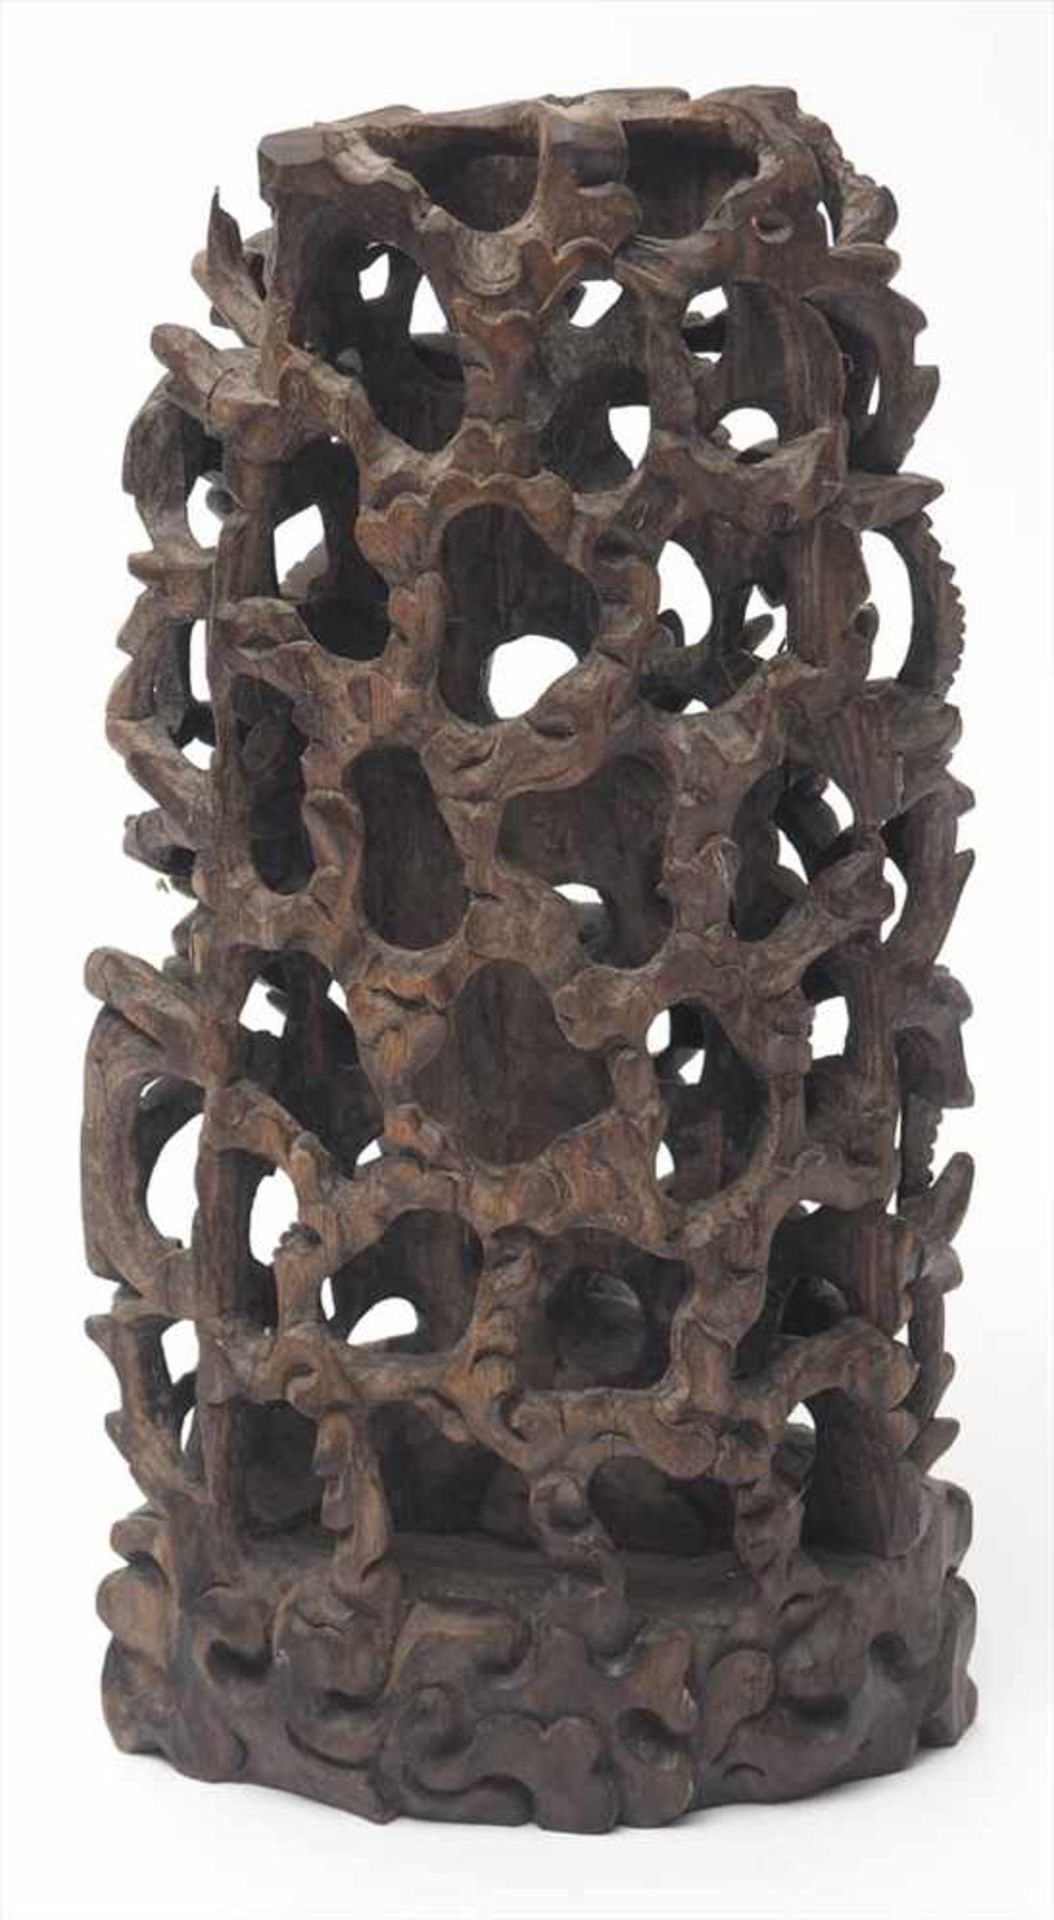 Schnitzerei, ChinaFein ausgearbeitete Schlachtenszene in dreidimensionaler Schnitzerei. Holz, - Image 2 of 4